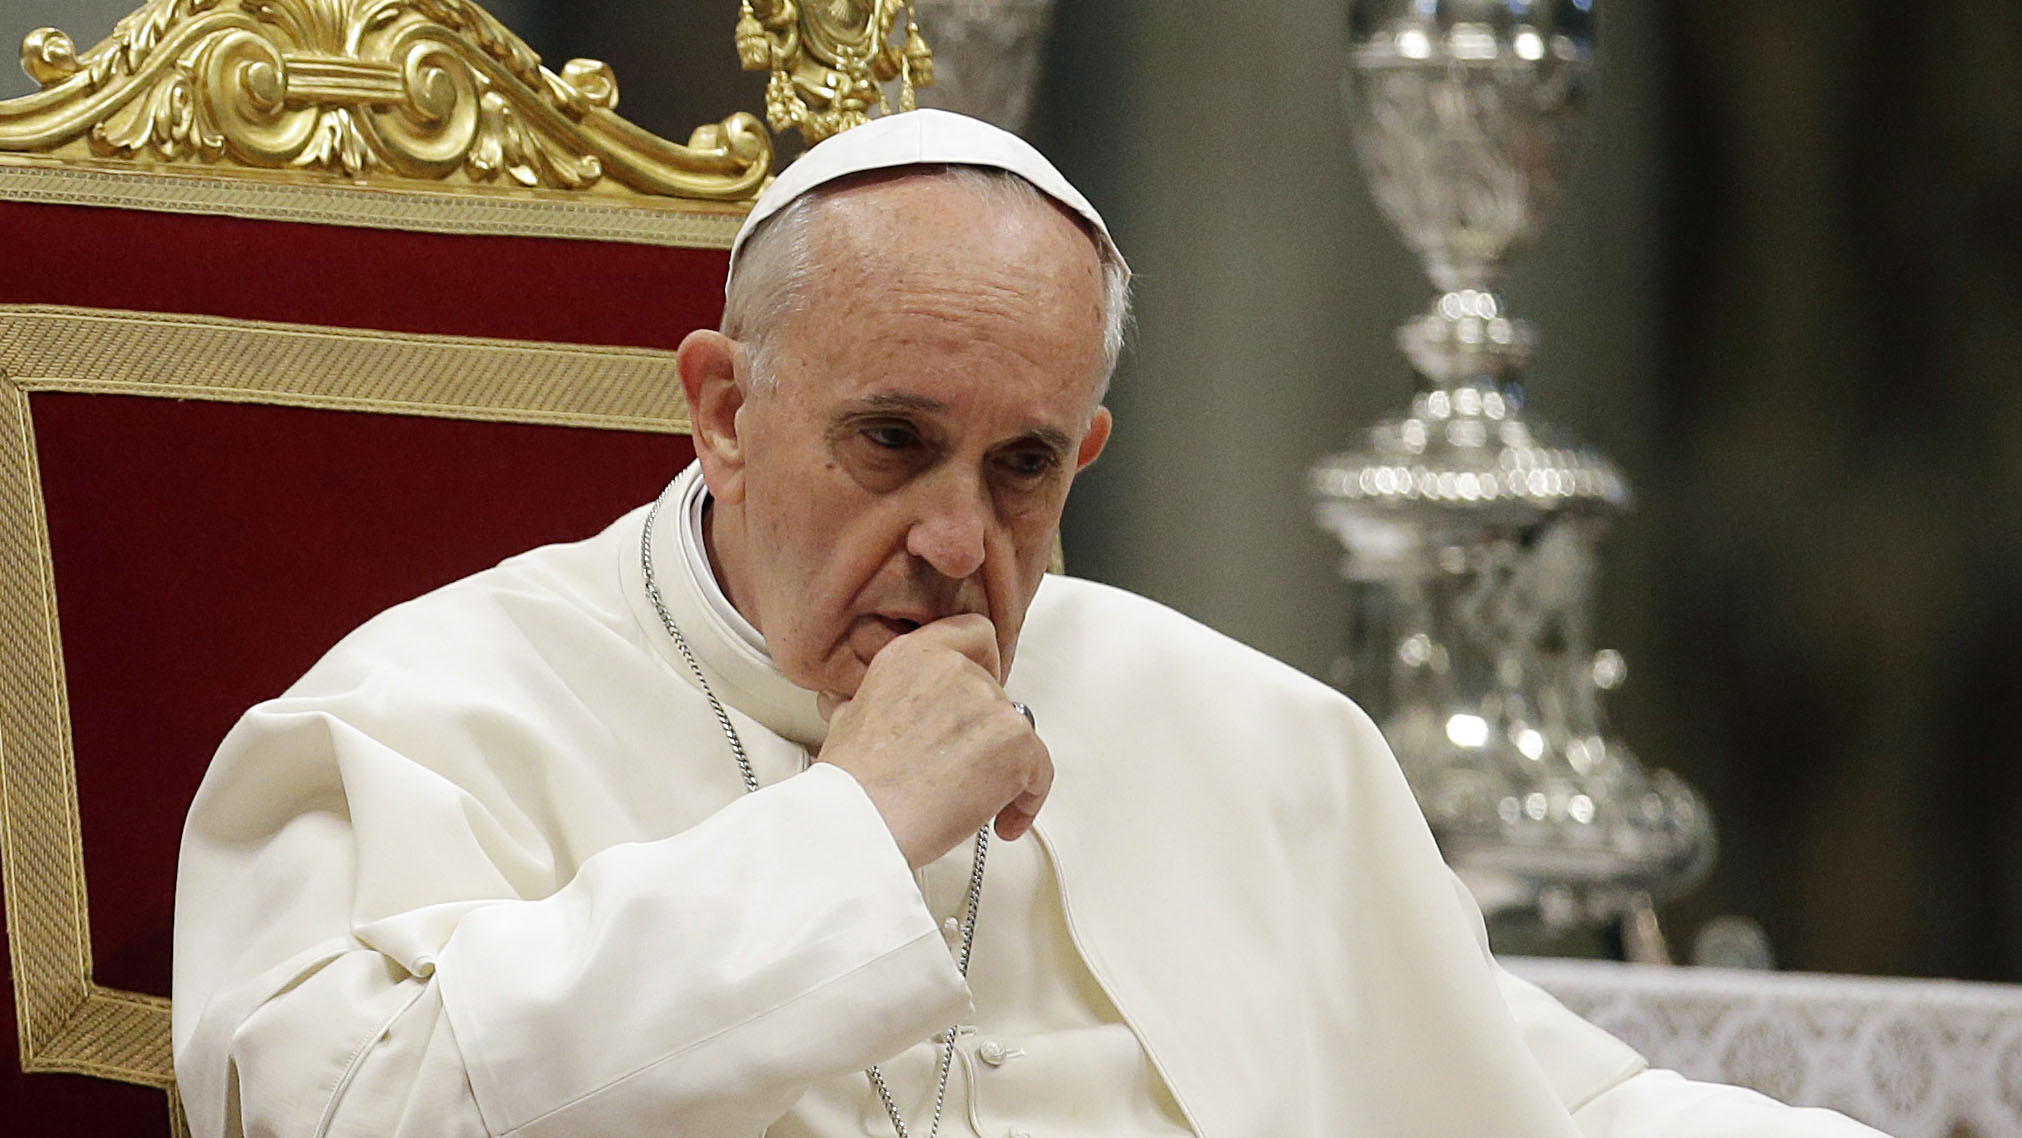 “Deus chora, Jesus chora”, diz papa sobre guerras no mundo